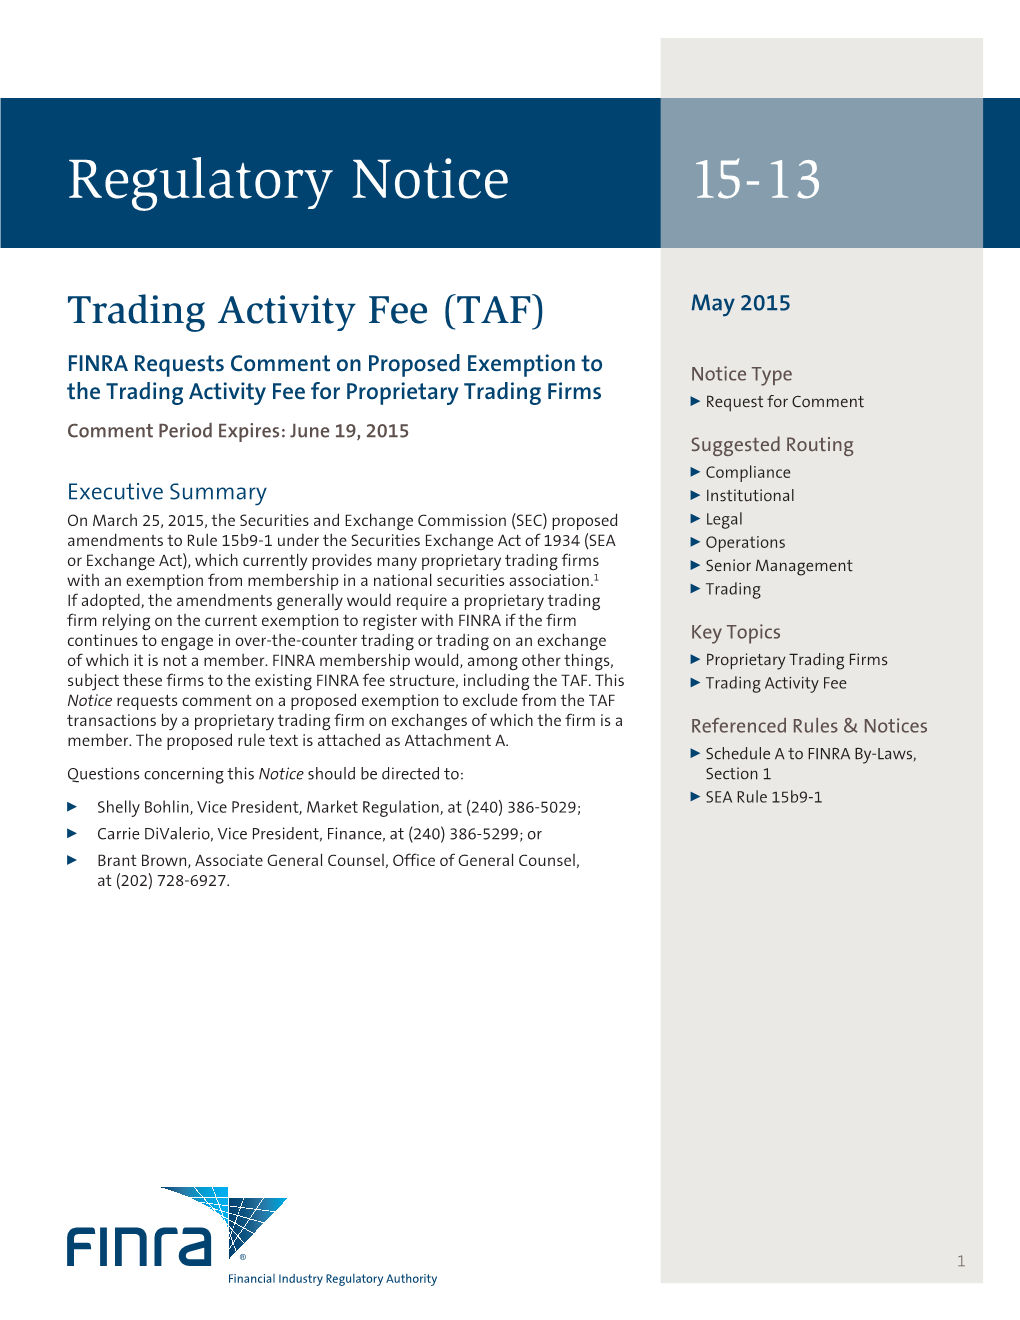 Regulatory Notice 15-13